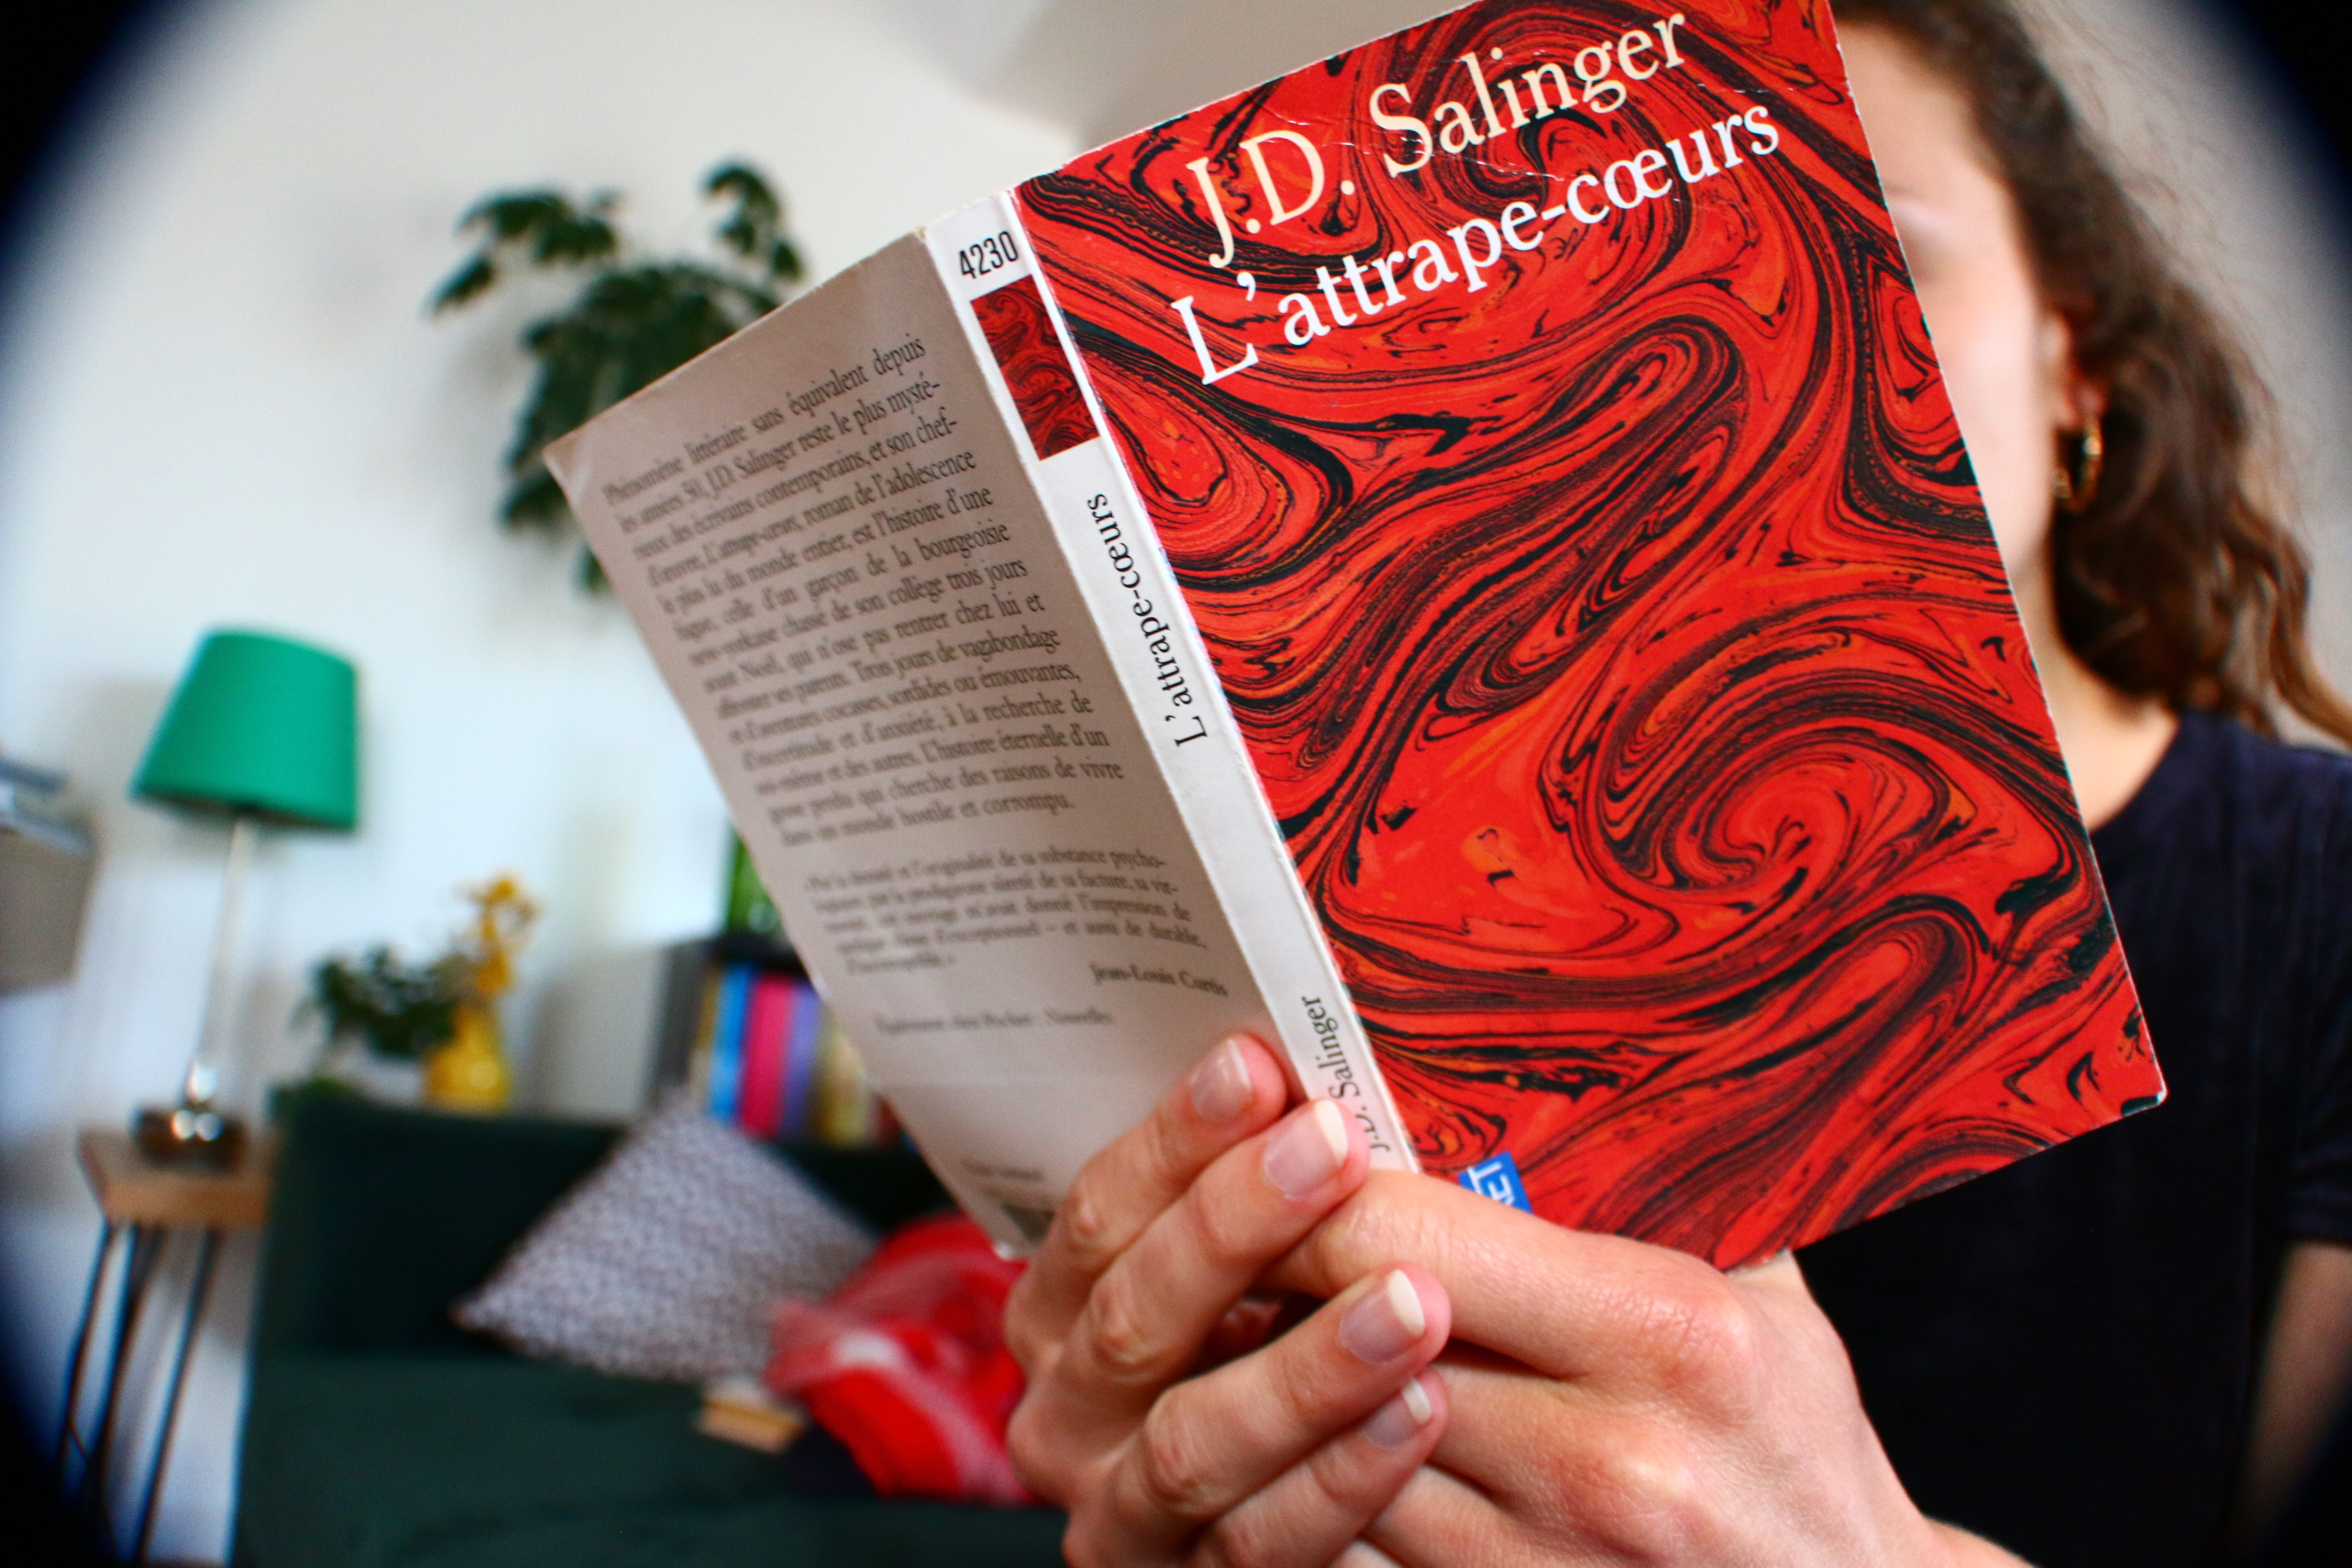  L'attrape-cœurs J.D. Salinger